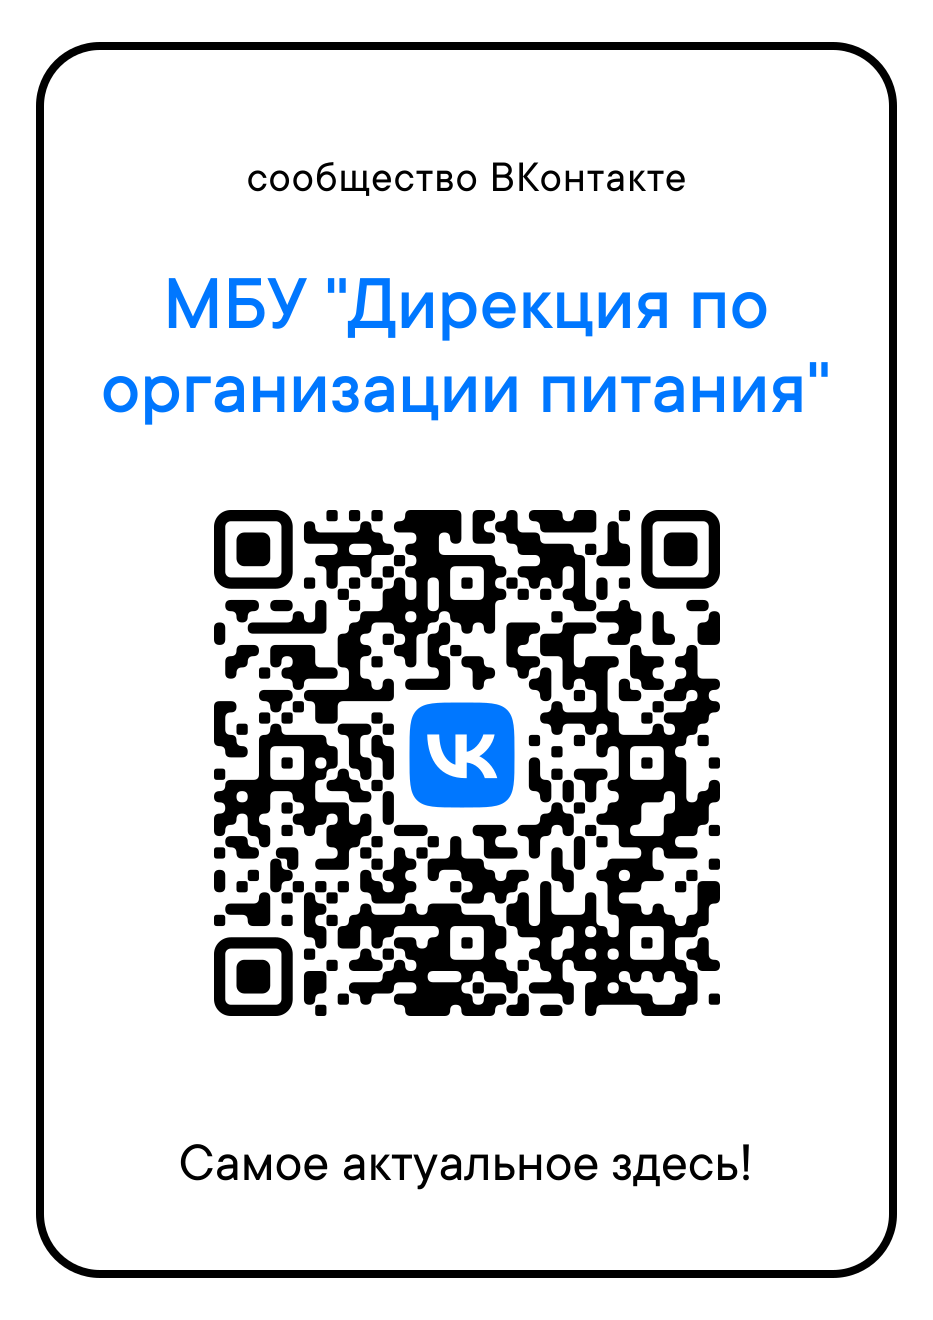 QR код организации. Пароли на приложения коды. Код Армении с мобильного. Информация о нас приложение. Дирекция по организации питания нижний